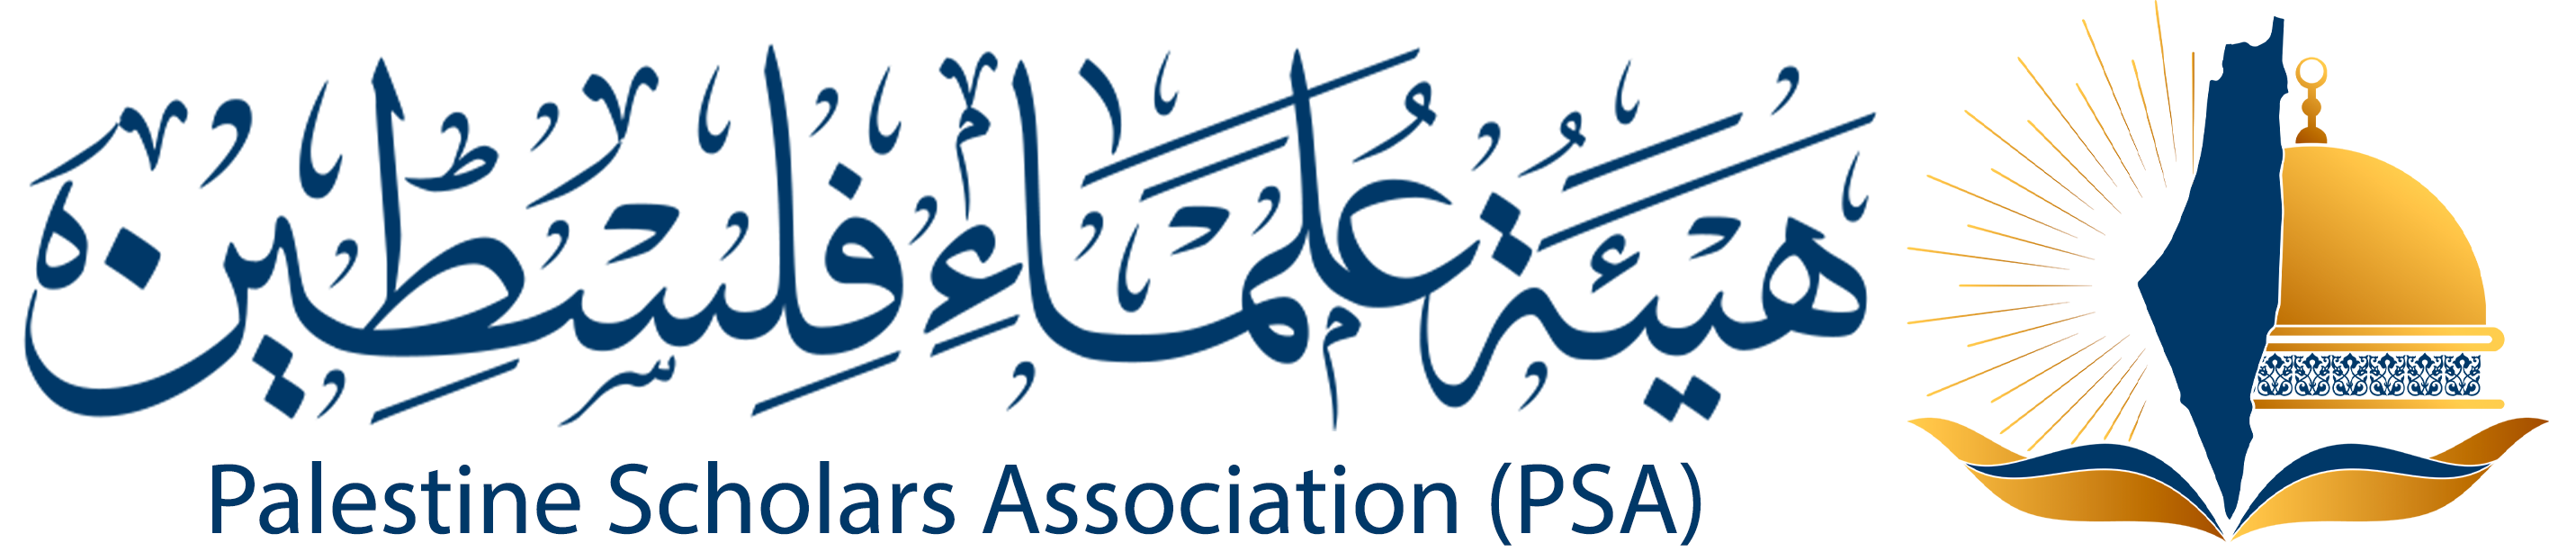 هيئة علماء فلسطين - الناطق الرسمي